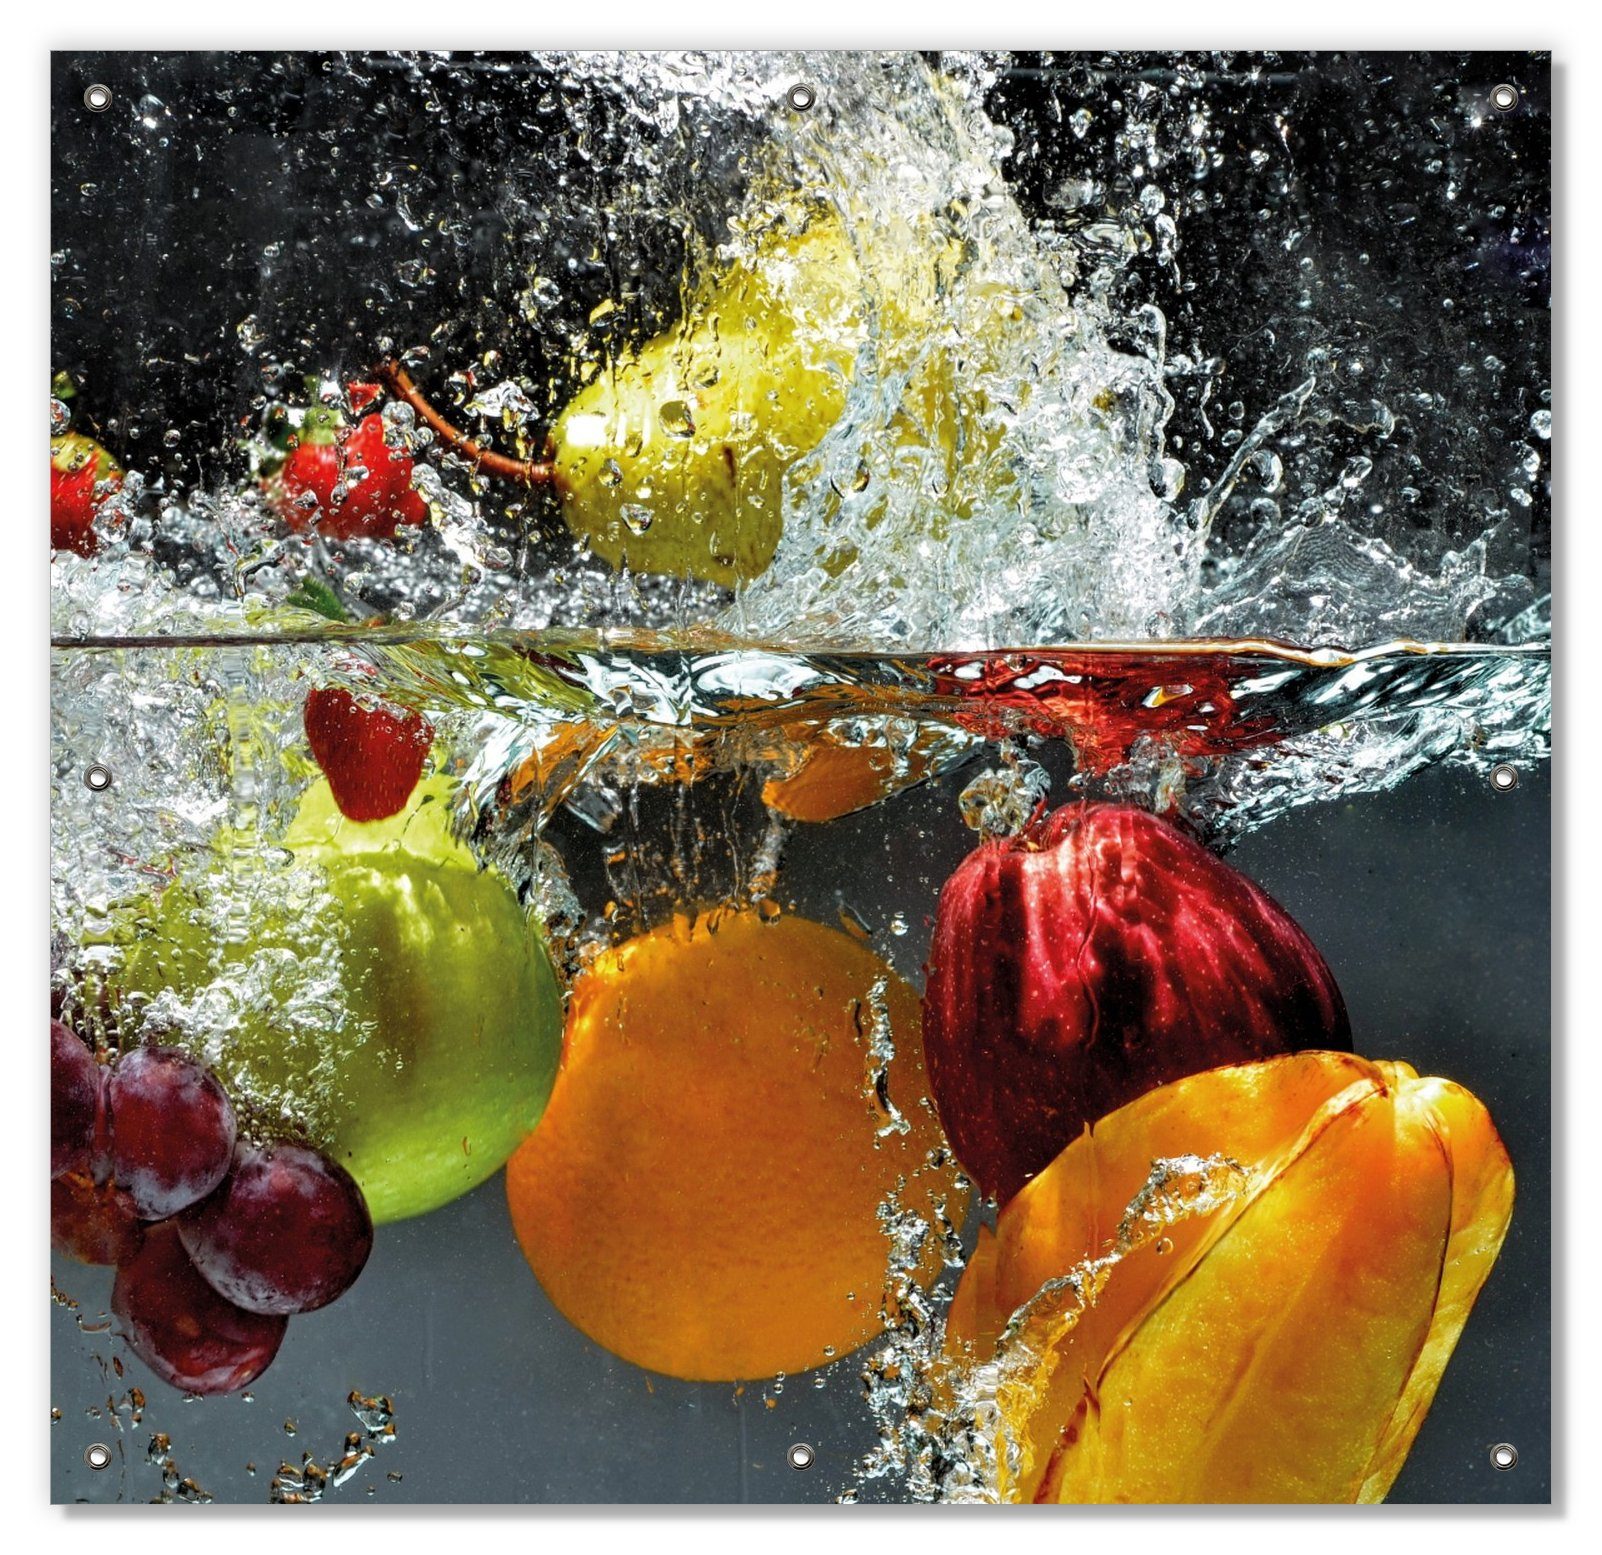 mit Fruits, blickdicht, Früchte und wiederablösbar Sonnenschutz - Wasser wiederverwendbar unter und Saugnäpfen, Splashing Wallario, im